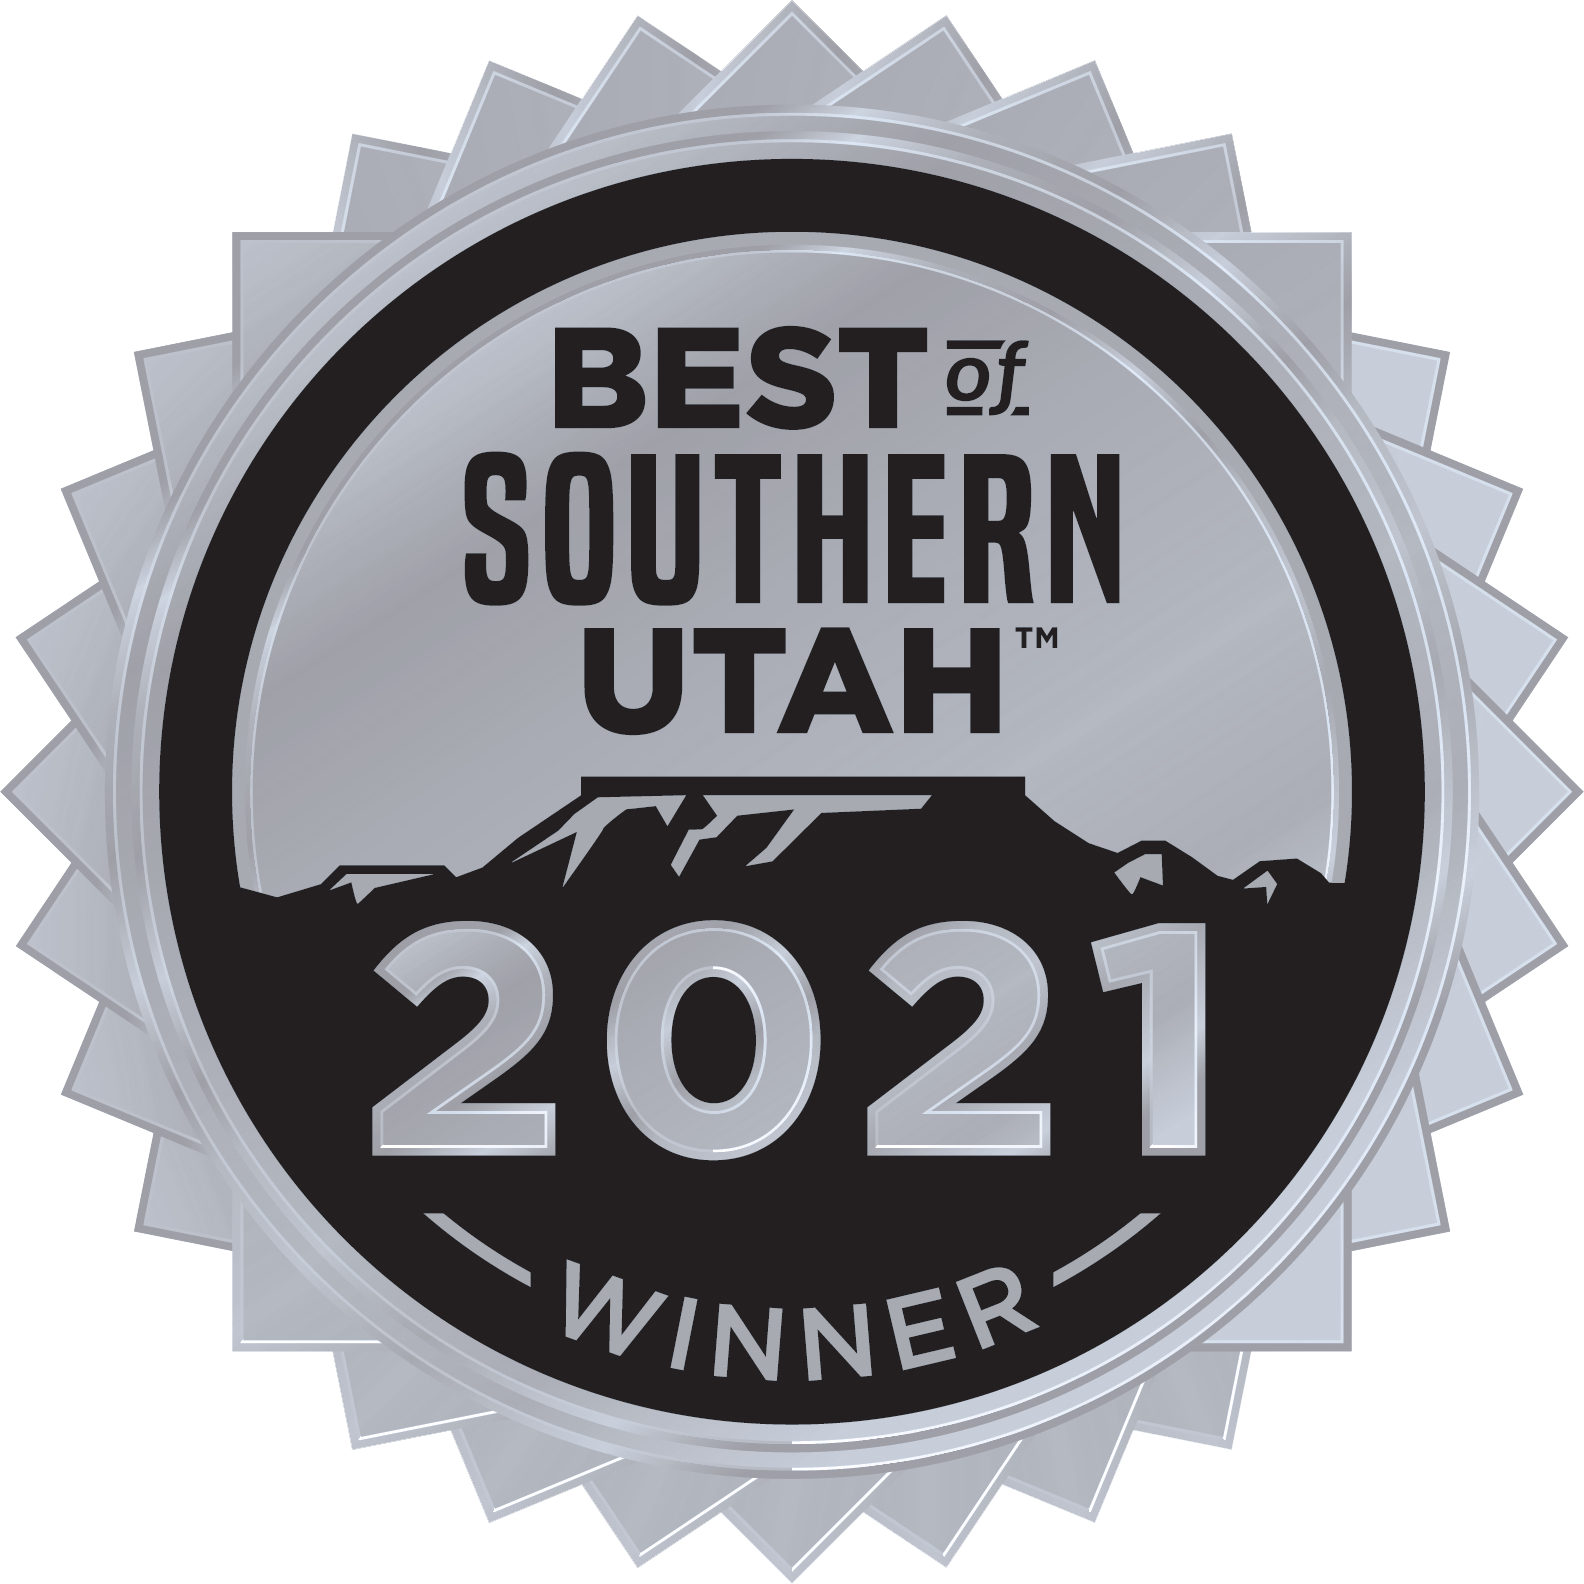 Best of Southern Utah Winner Badge